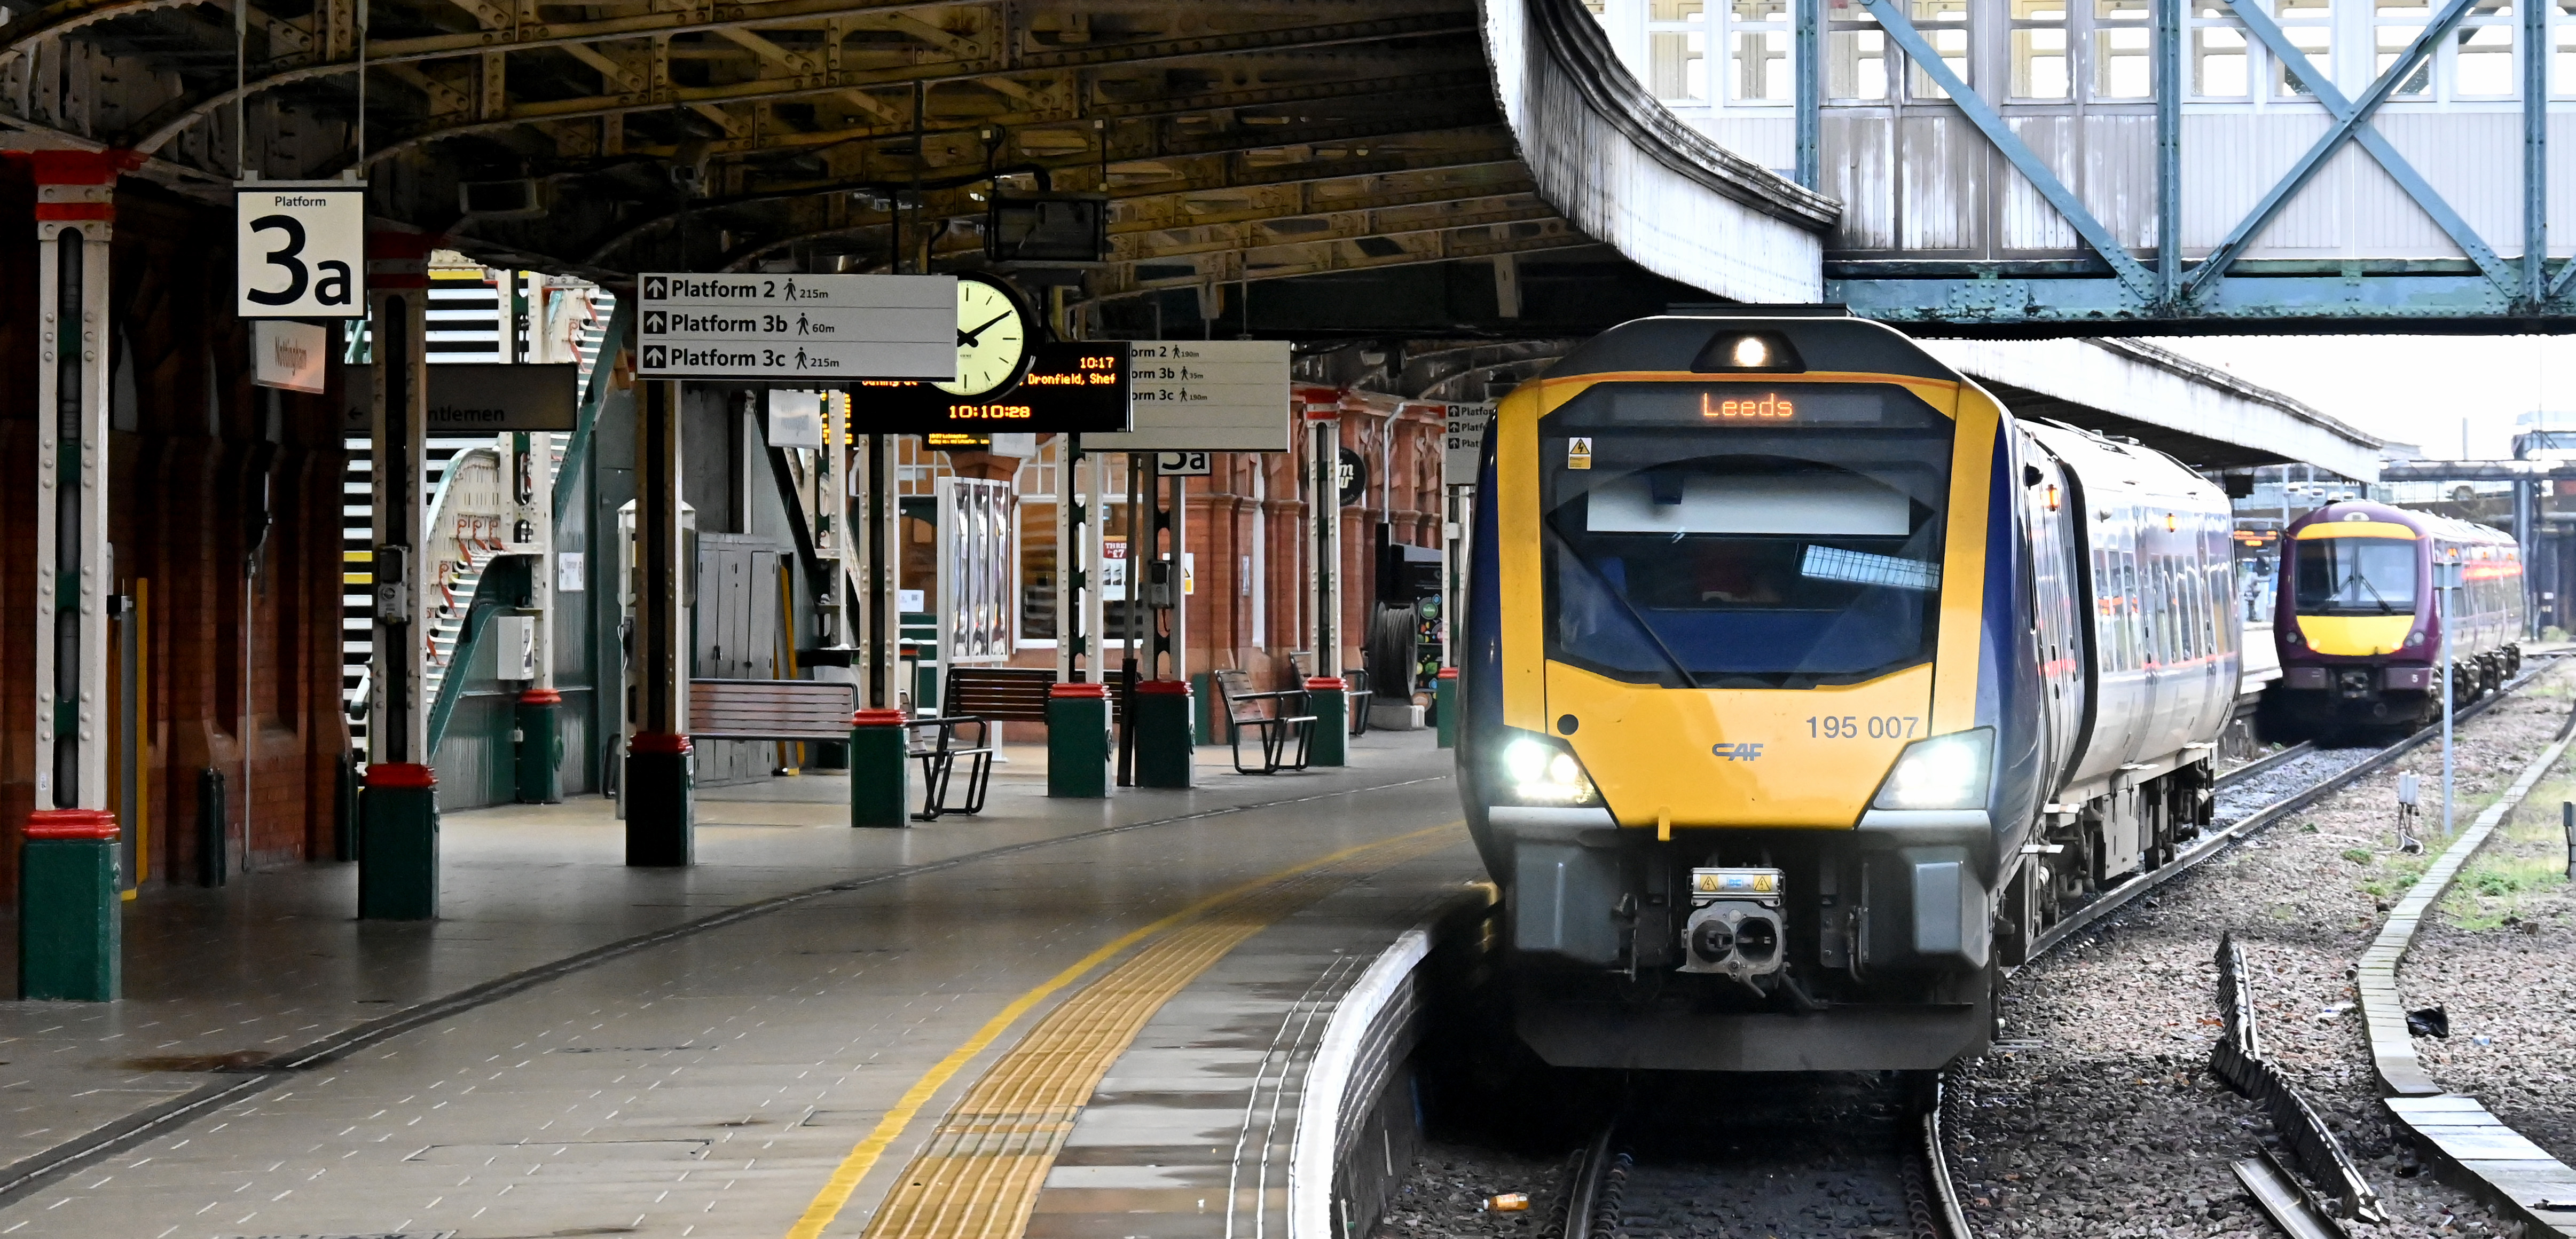 Transport experts back plans for upgrades in Nottingham